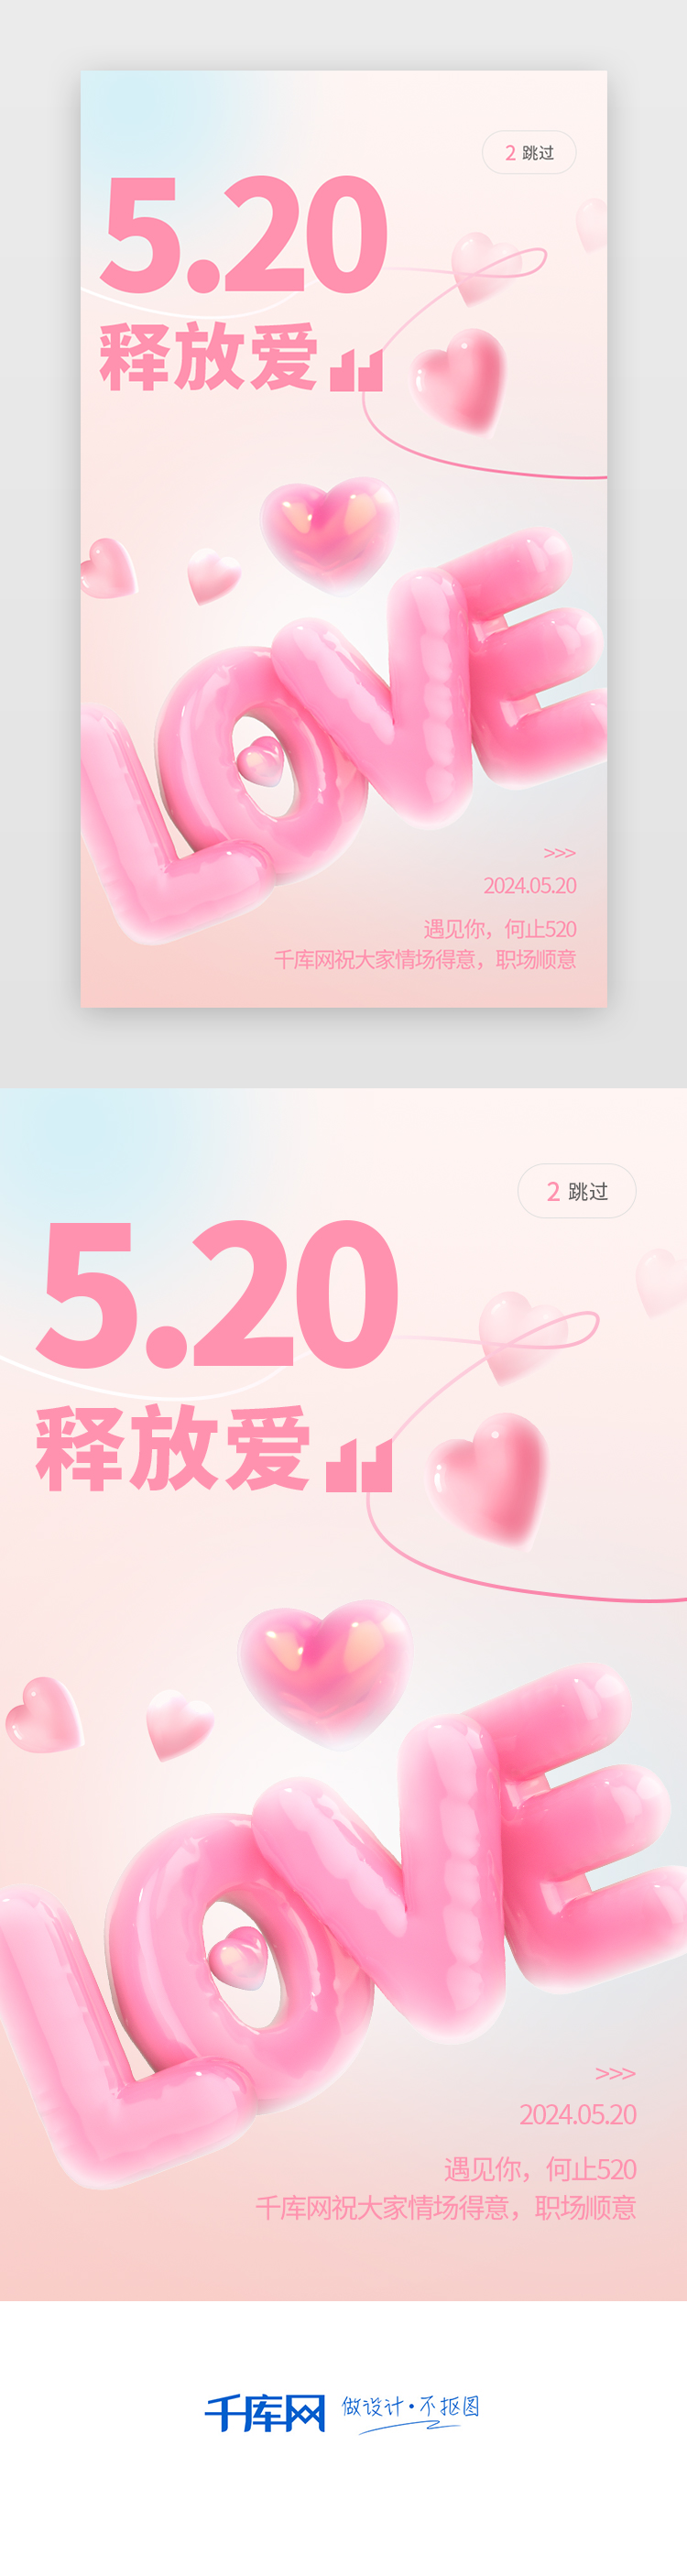 520、情人节闪屏、h53d、膨胀质感粉色、蓝色、白色爱心、love界面设计图片